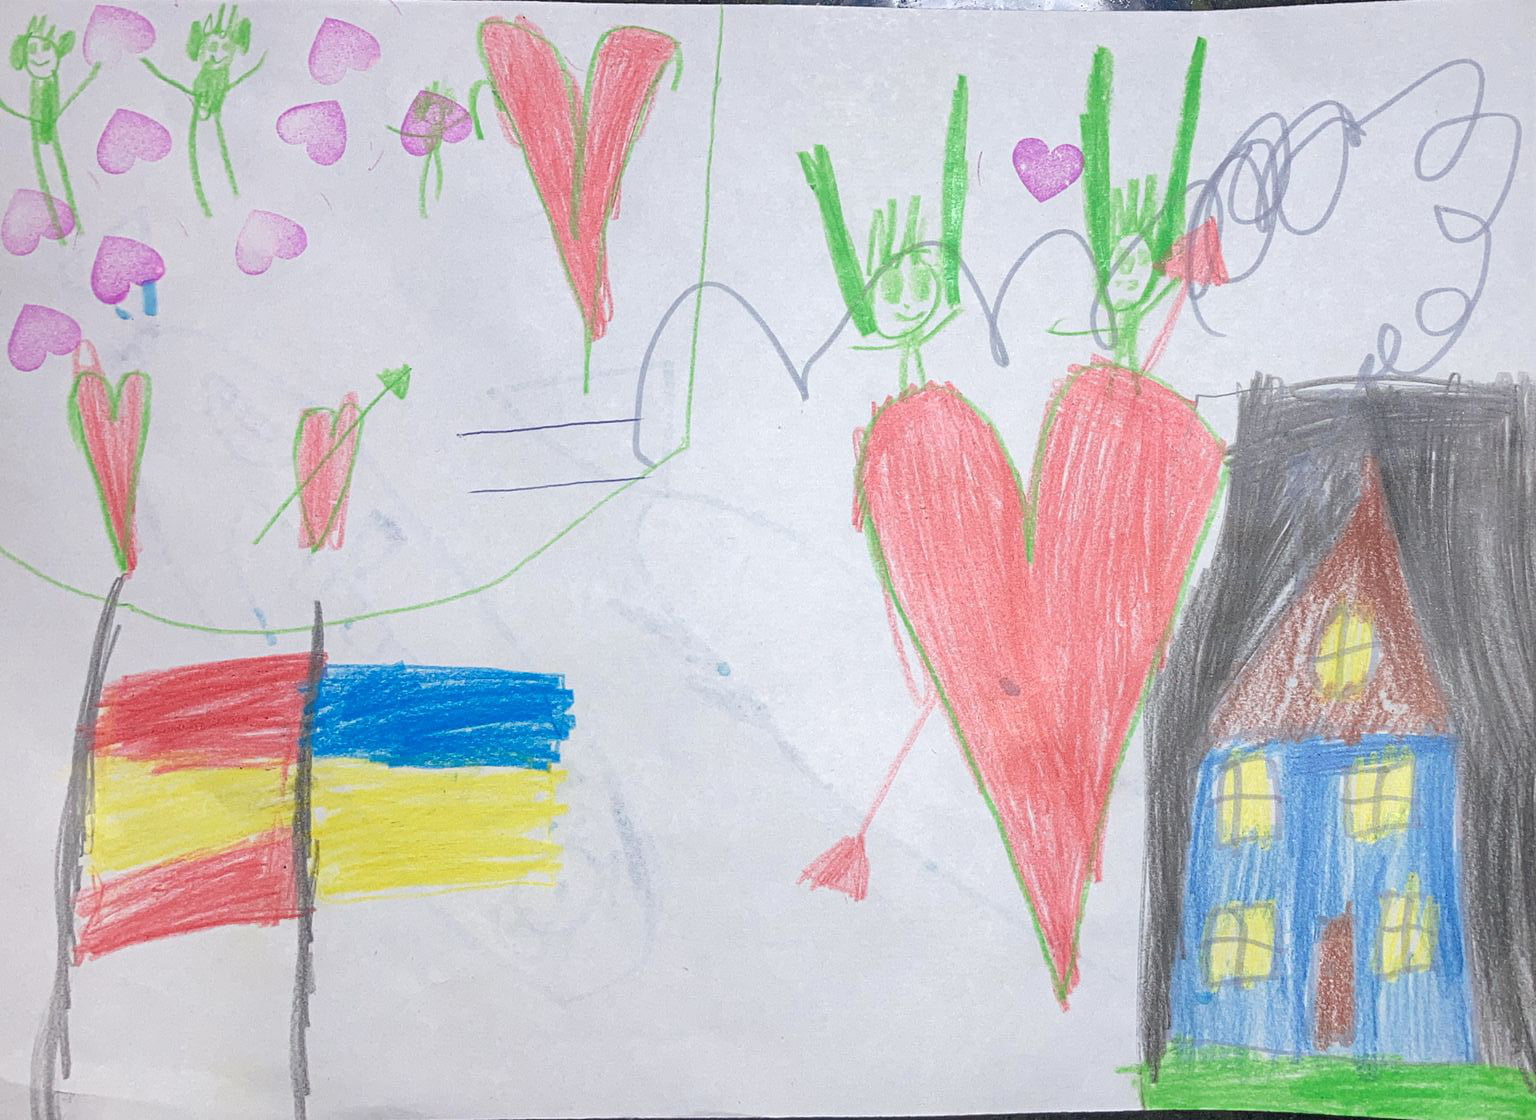 Dibujo del hijo de Kateryna que representa la bandera ucraniana y española unidas